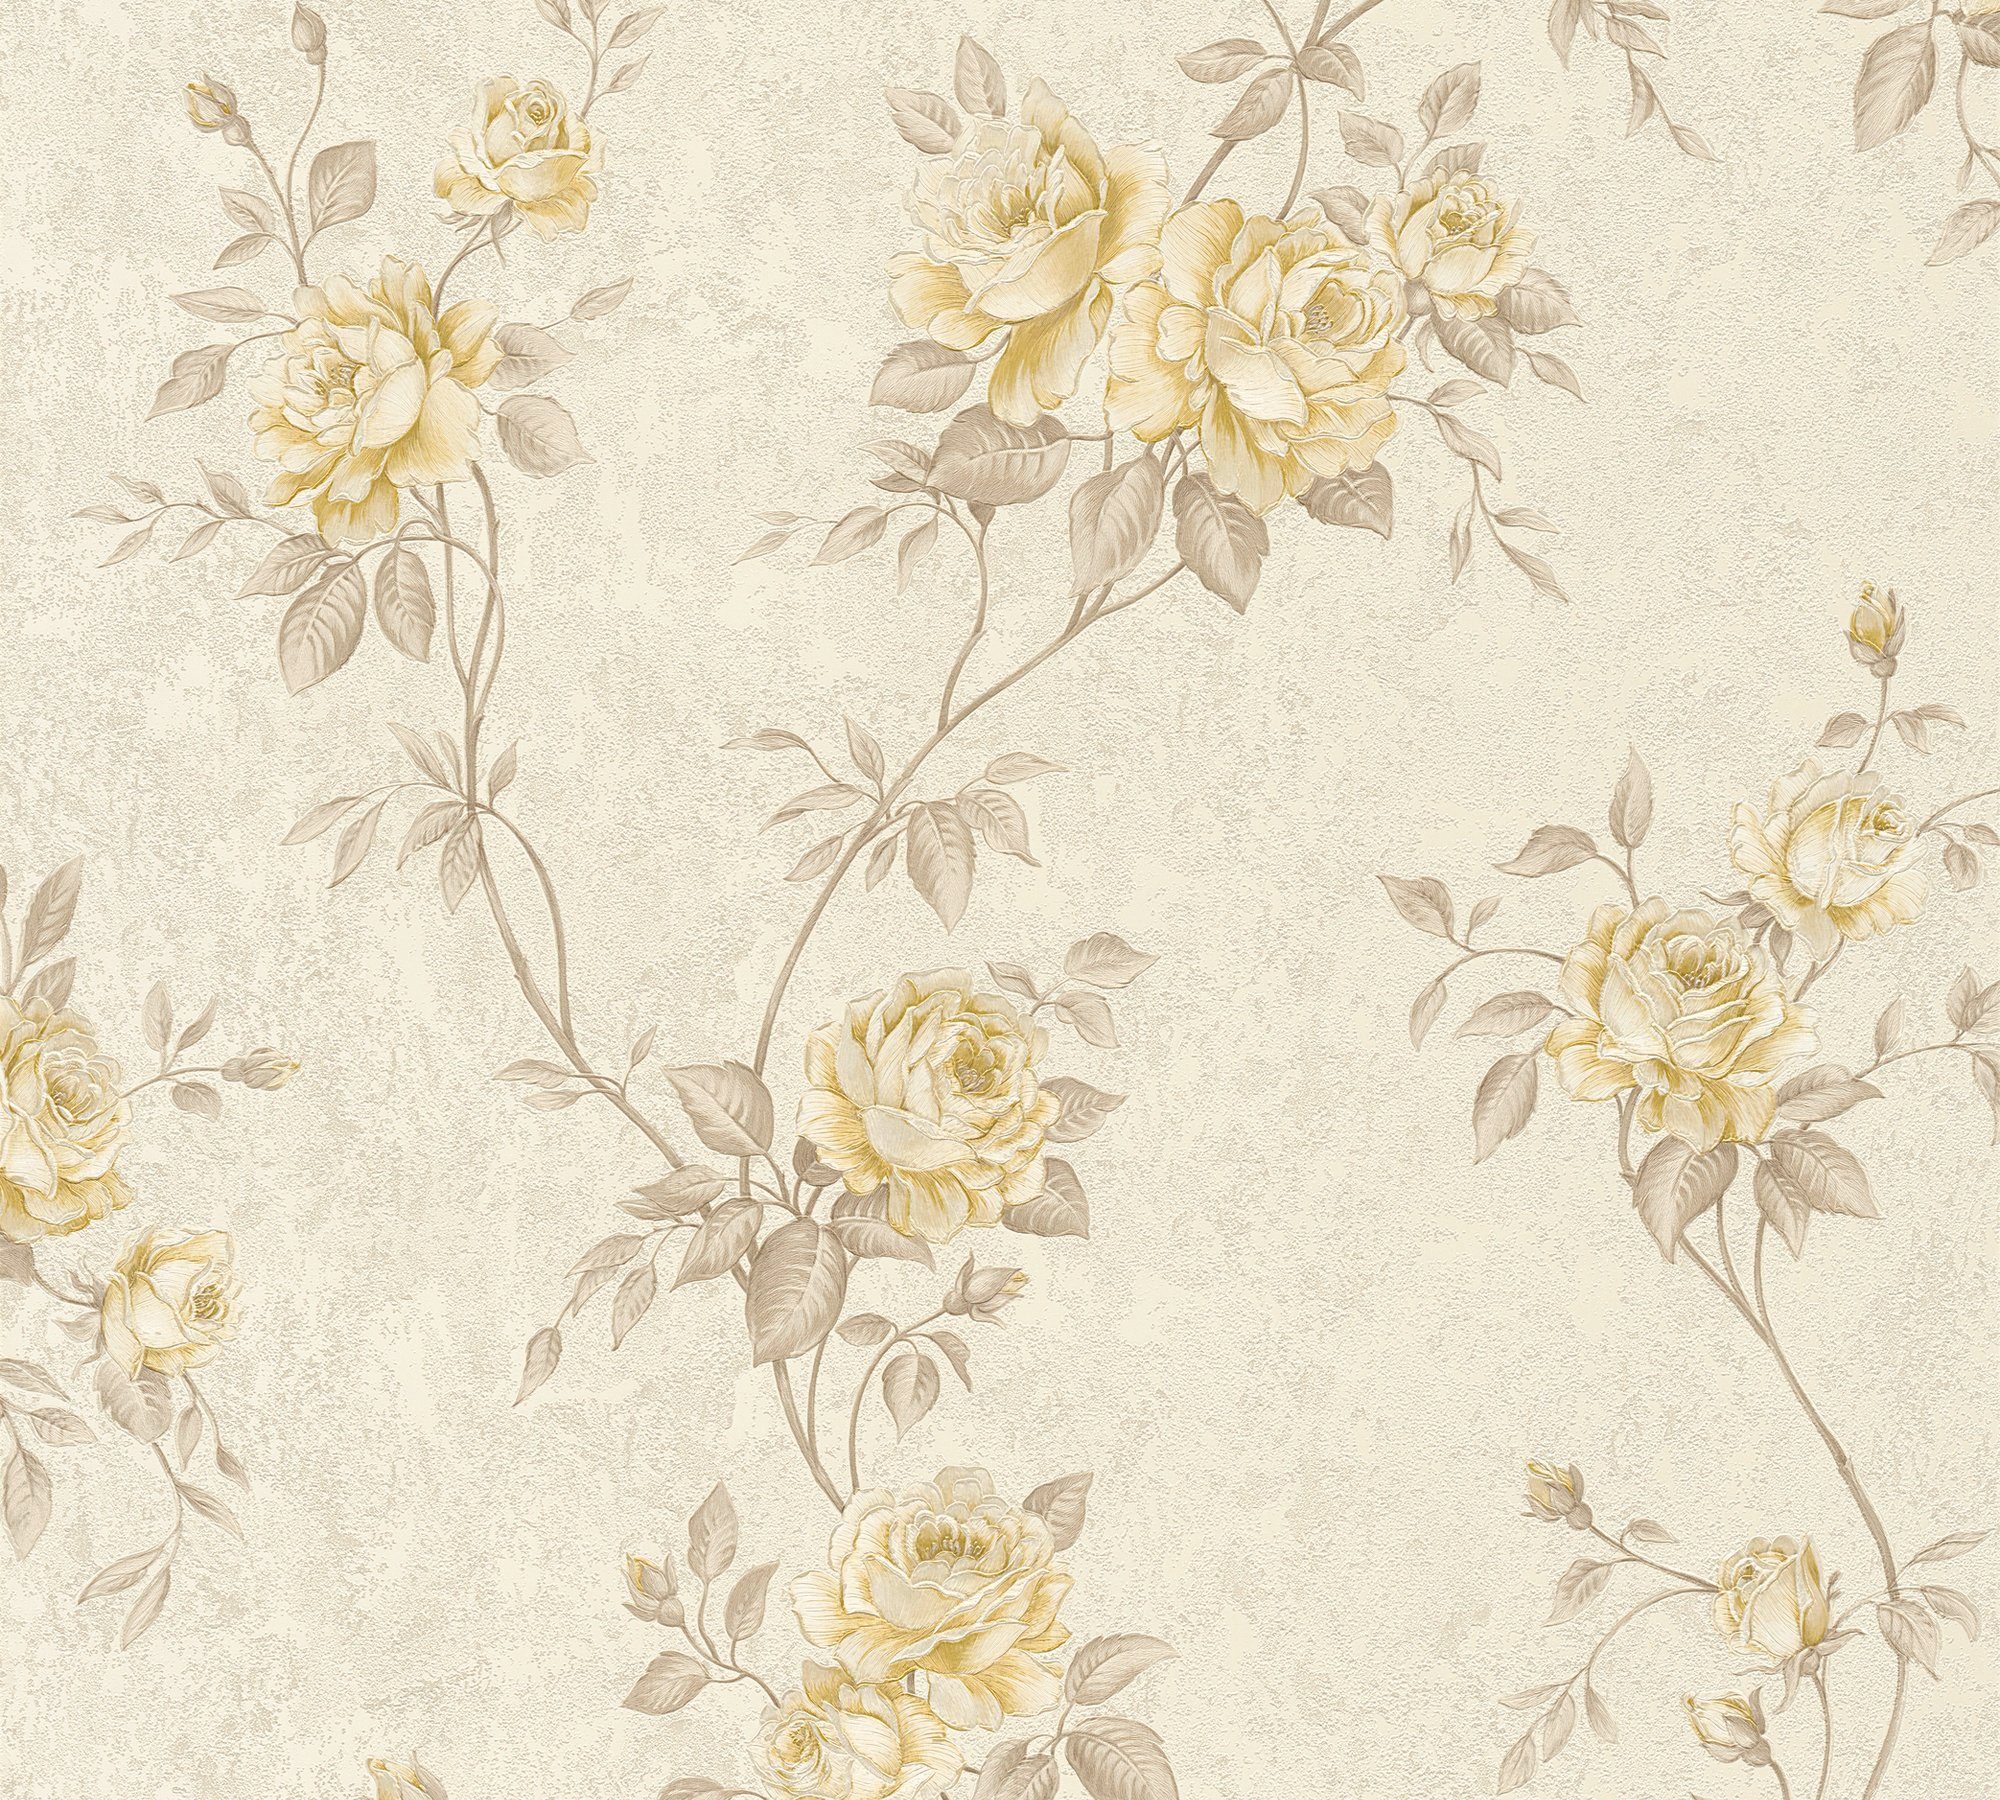 Romantico creme/beige Tapete A.S. romantisch Barock floral, Blumen Vliestapete Création floral,